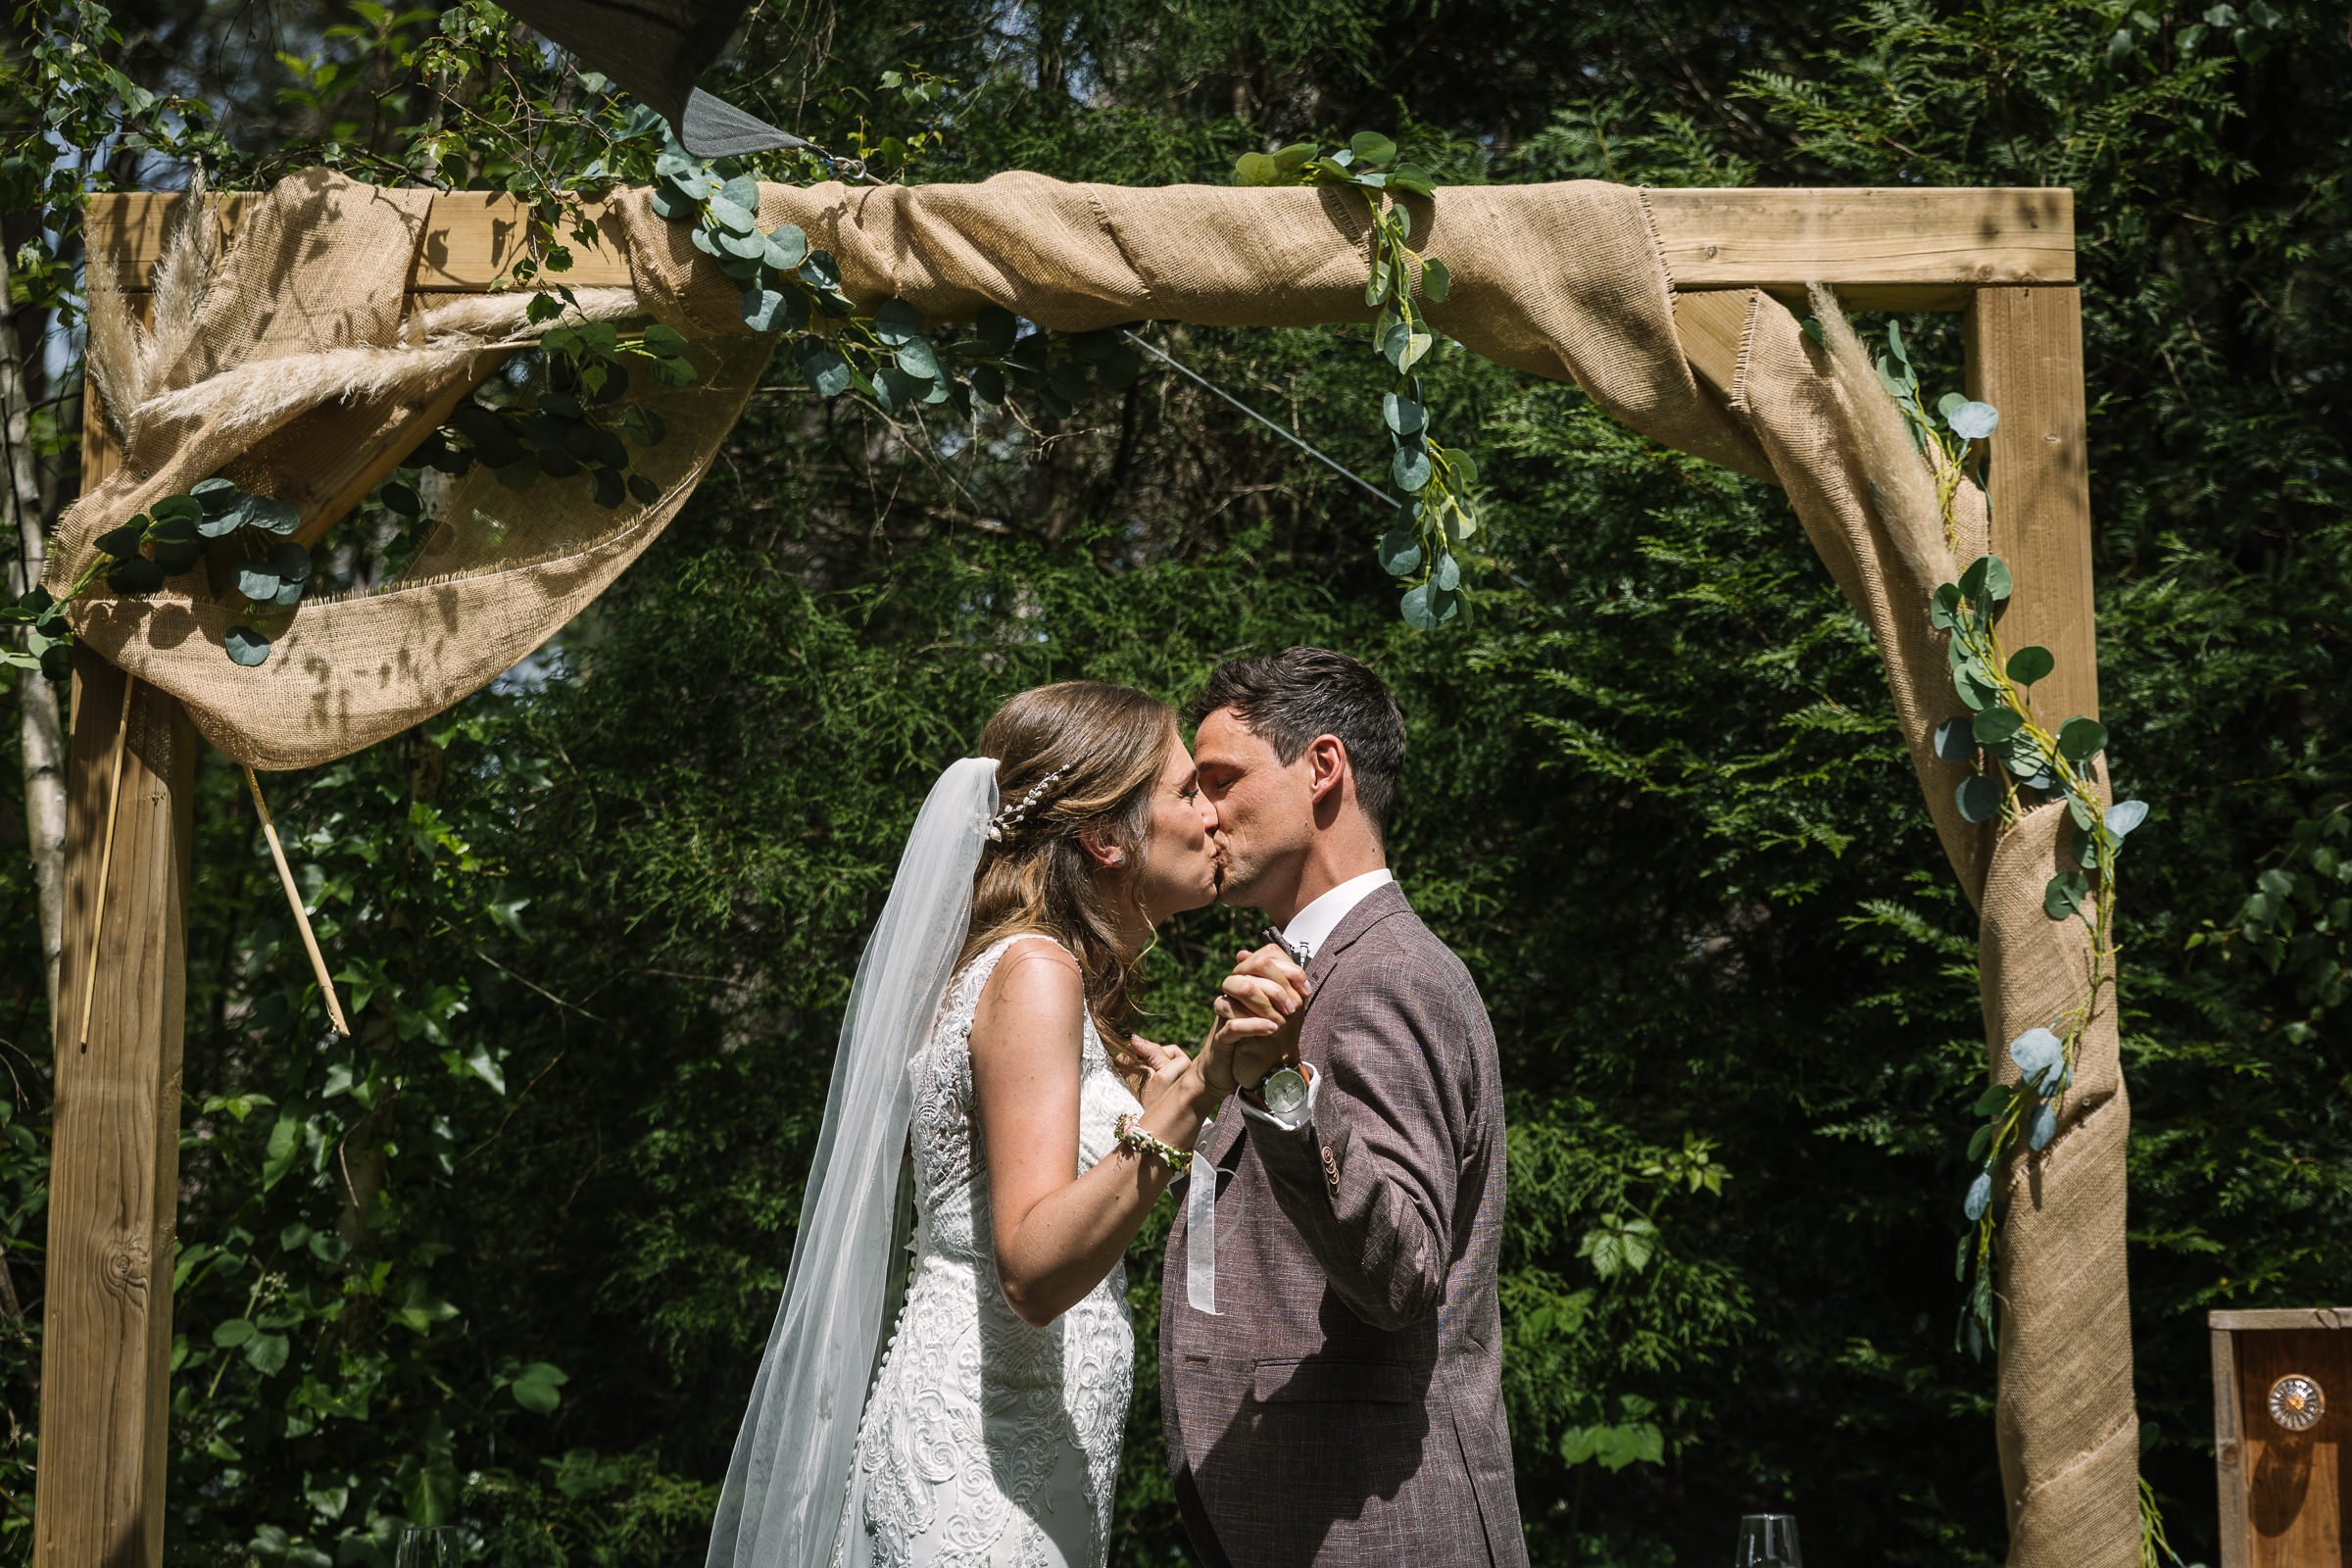 de kus trouwceremonie bruidspaar buiten natuurlijk_de_kloof bergen_op_zoom trouwfoto kleur door documentair bruidsfotograaf Breda natuurlijke authentieke ongepaneerde trouwreportage